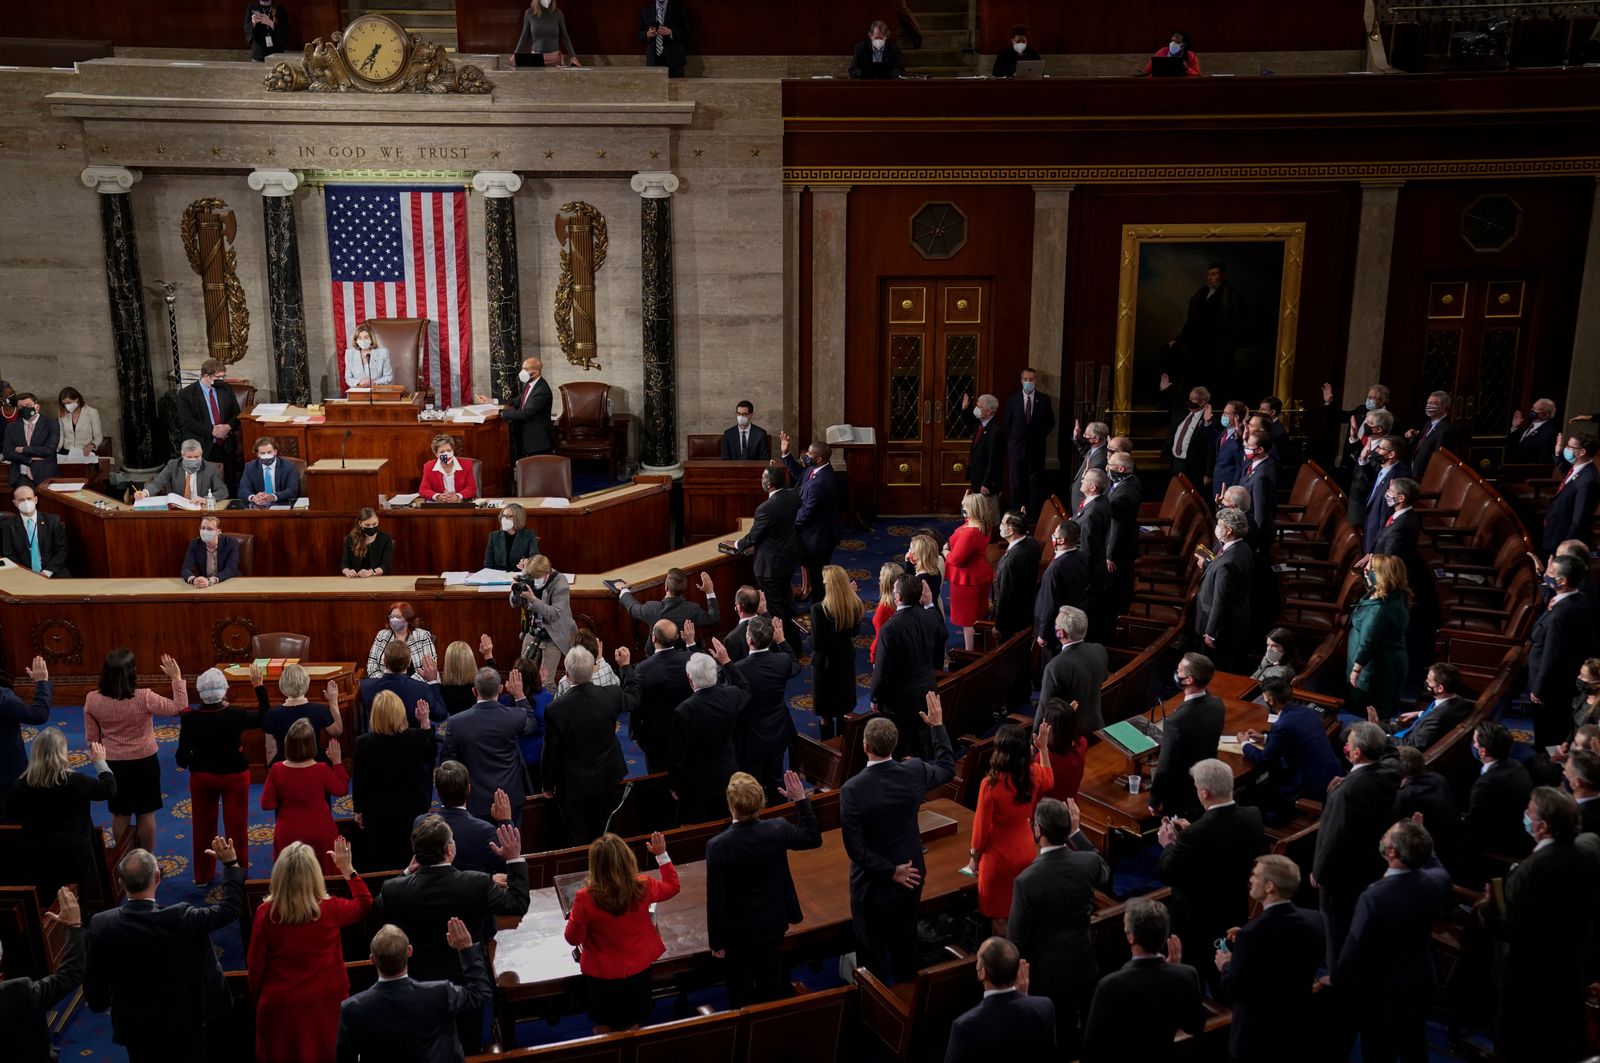 نواب الحزب الجمهوري يؤدون اليمين الدستورية في افتتاح الفصل التشريعي الجديد للكونغرس الأميركي. 3 يناير 2021 - AFP